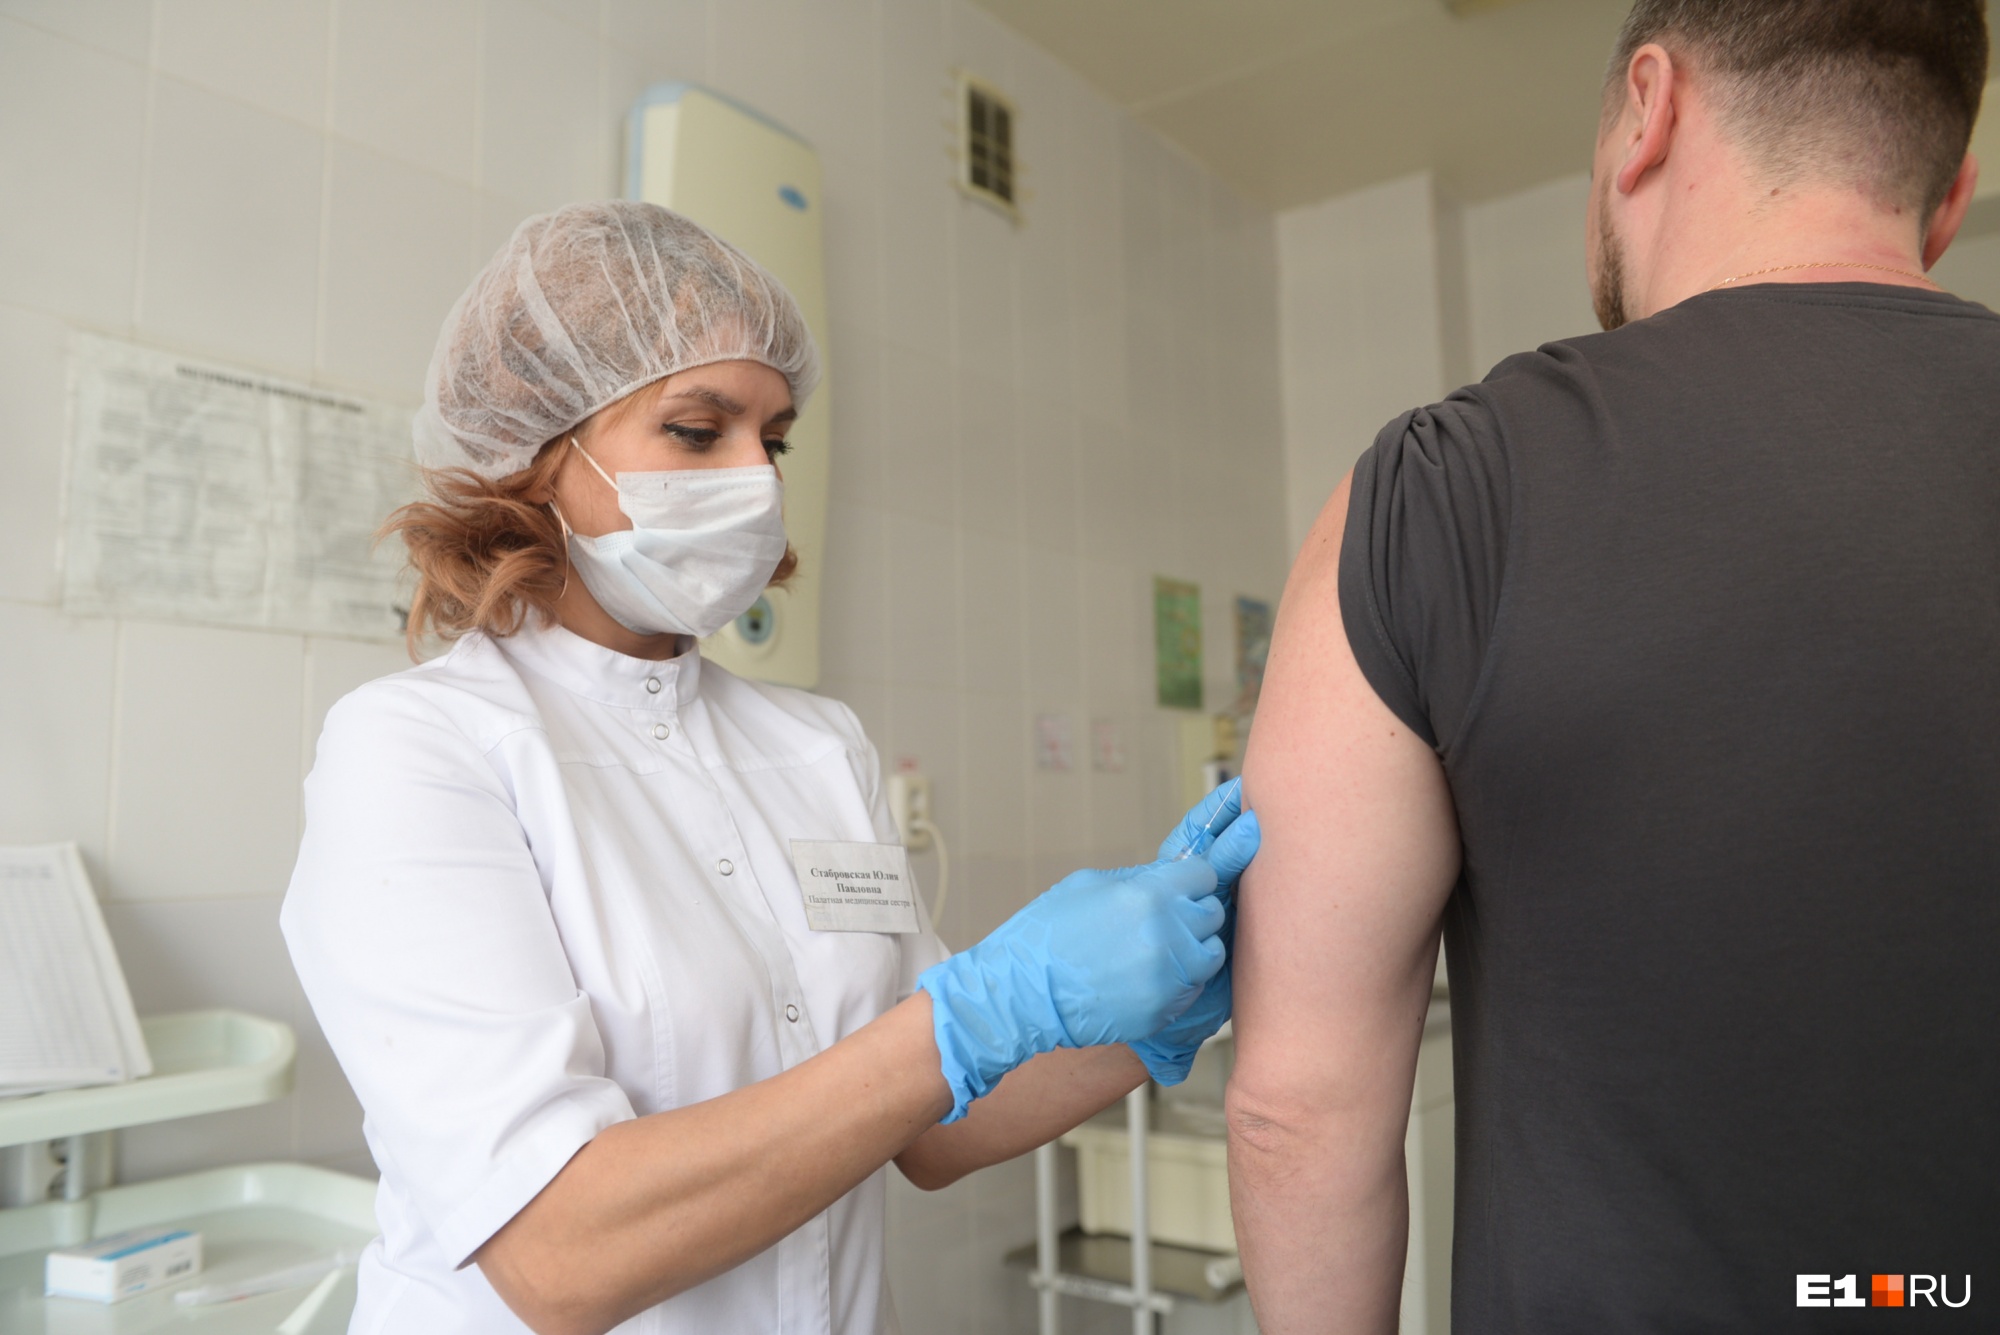 В Екатеринбурге на исходе вакцина от гриппа. Сколько людей уже привилось и когда следующая партия?